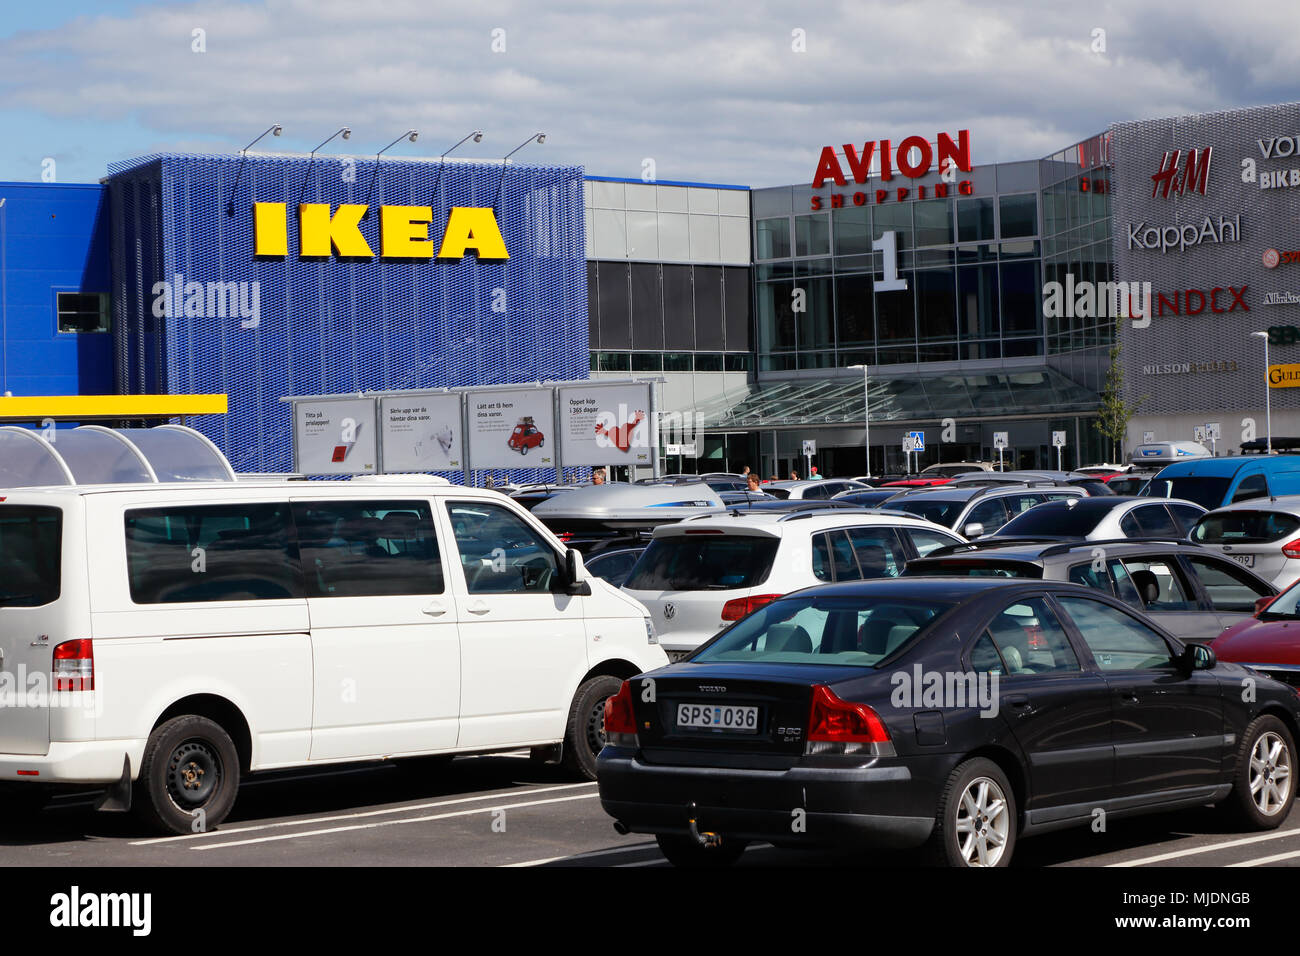 Umea, Schweden - 18. Juli 2016: Parkplatz mit parkenden Autos vor dem Einkaufszentrum mit IKEA-Möbelhaus und das Einkaufszentrum Avion. Stockfoto